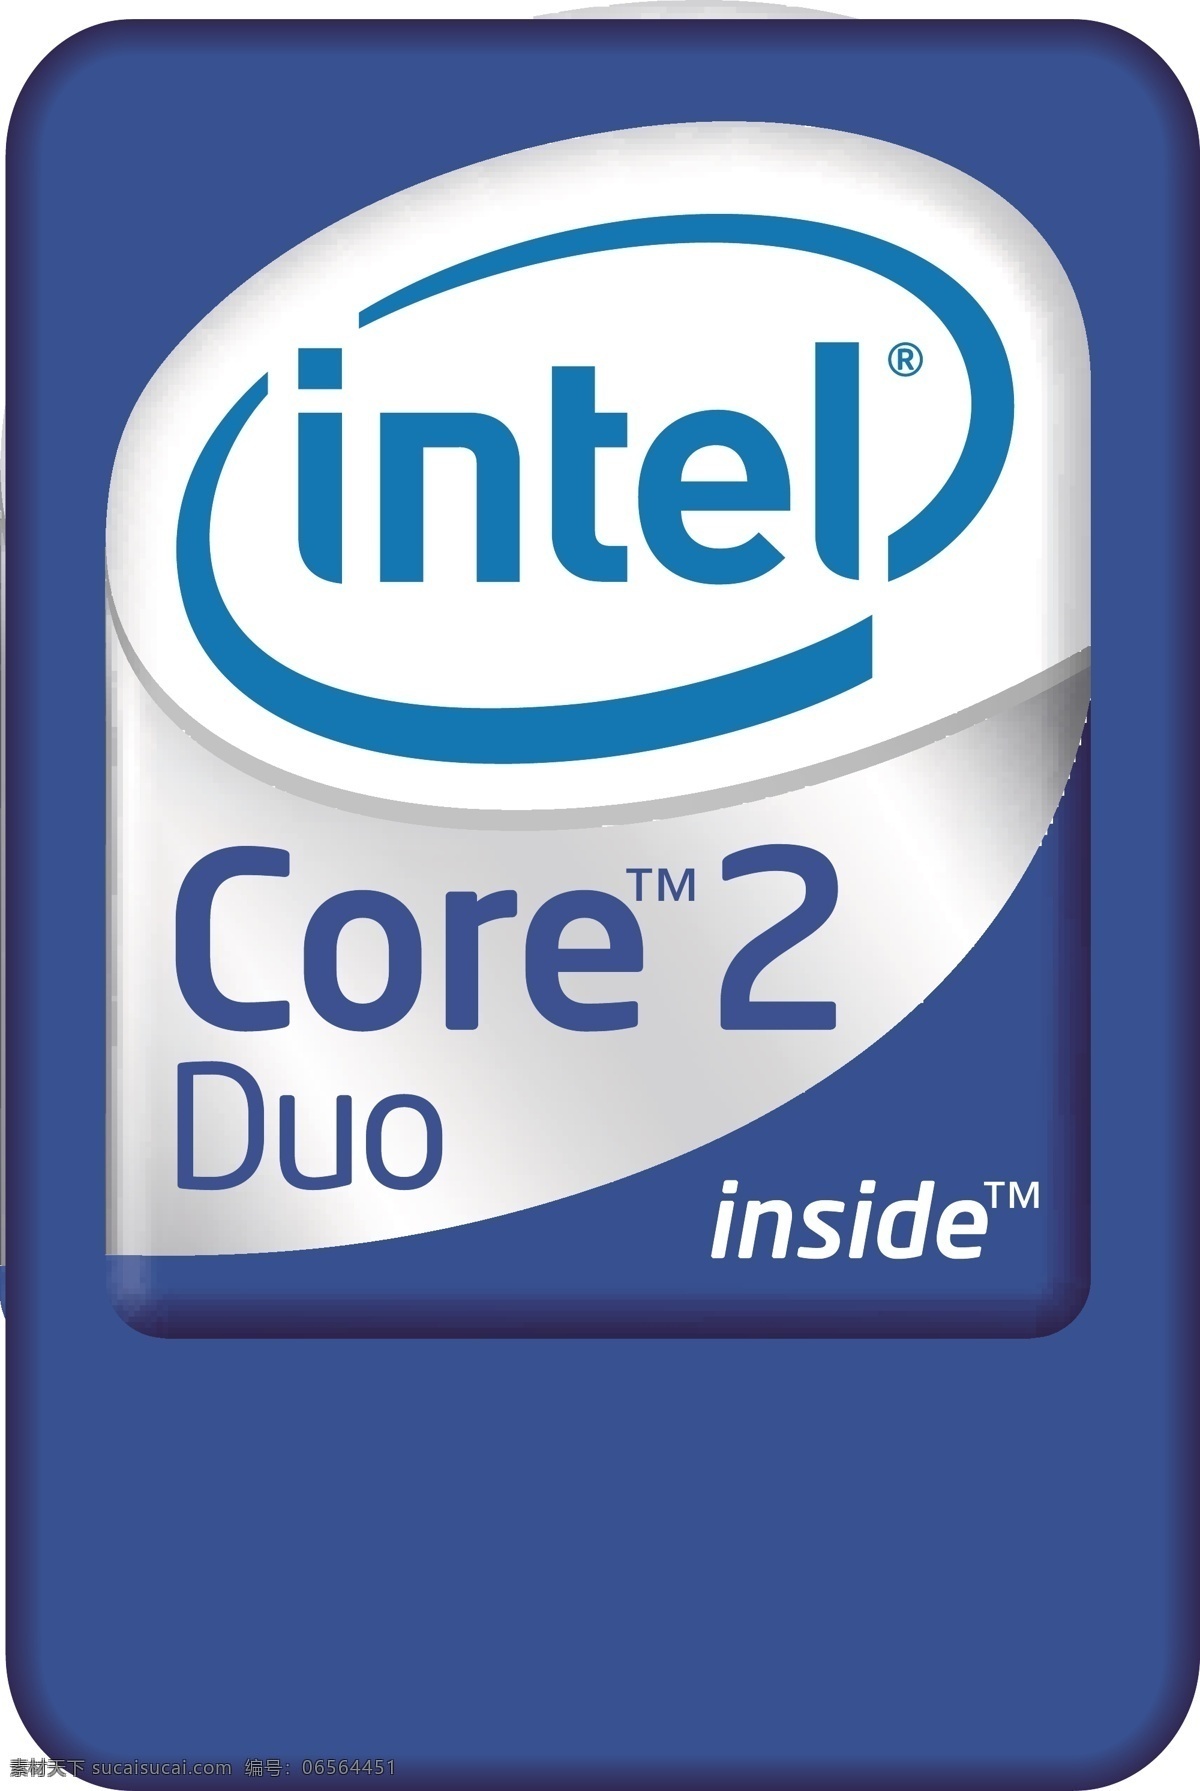 英特尔 酷睿2 双核 intel inside core2 duo 蓝色